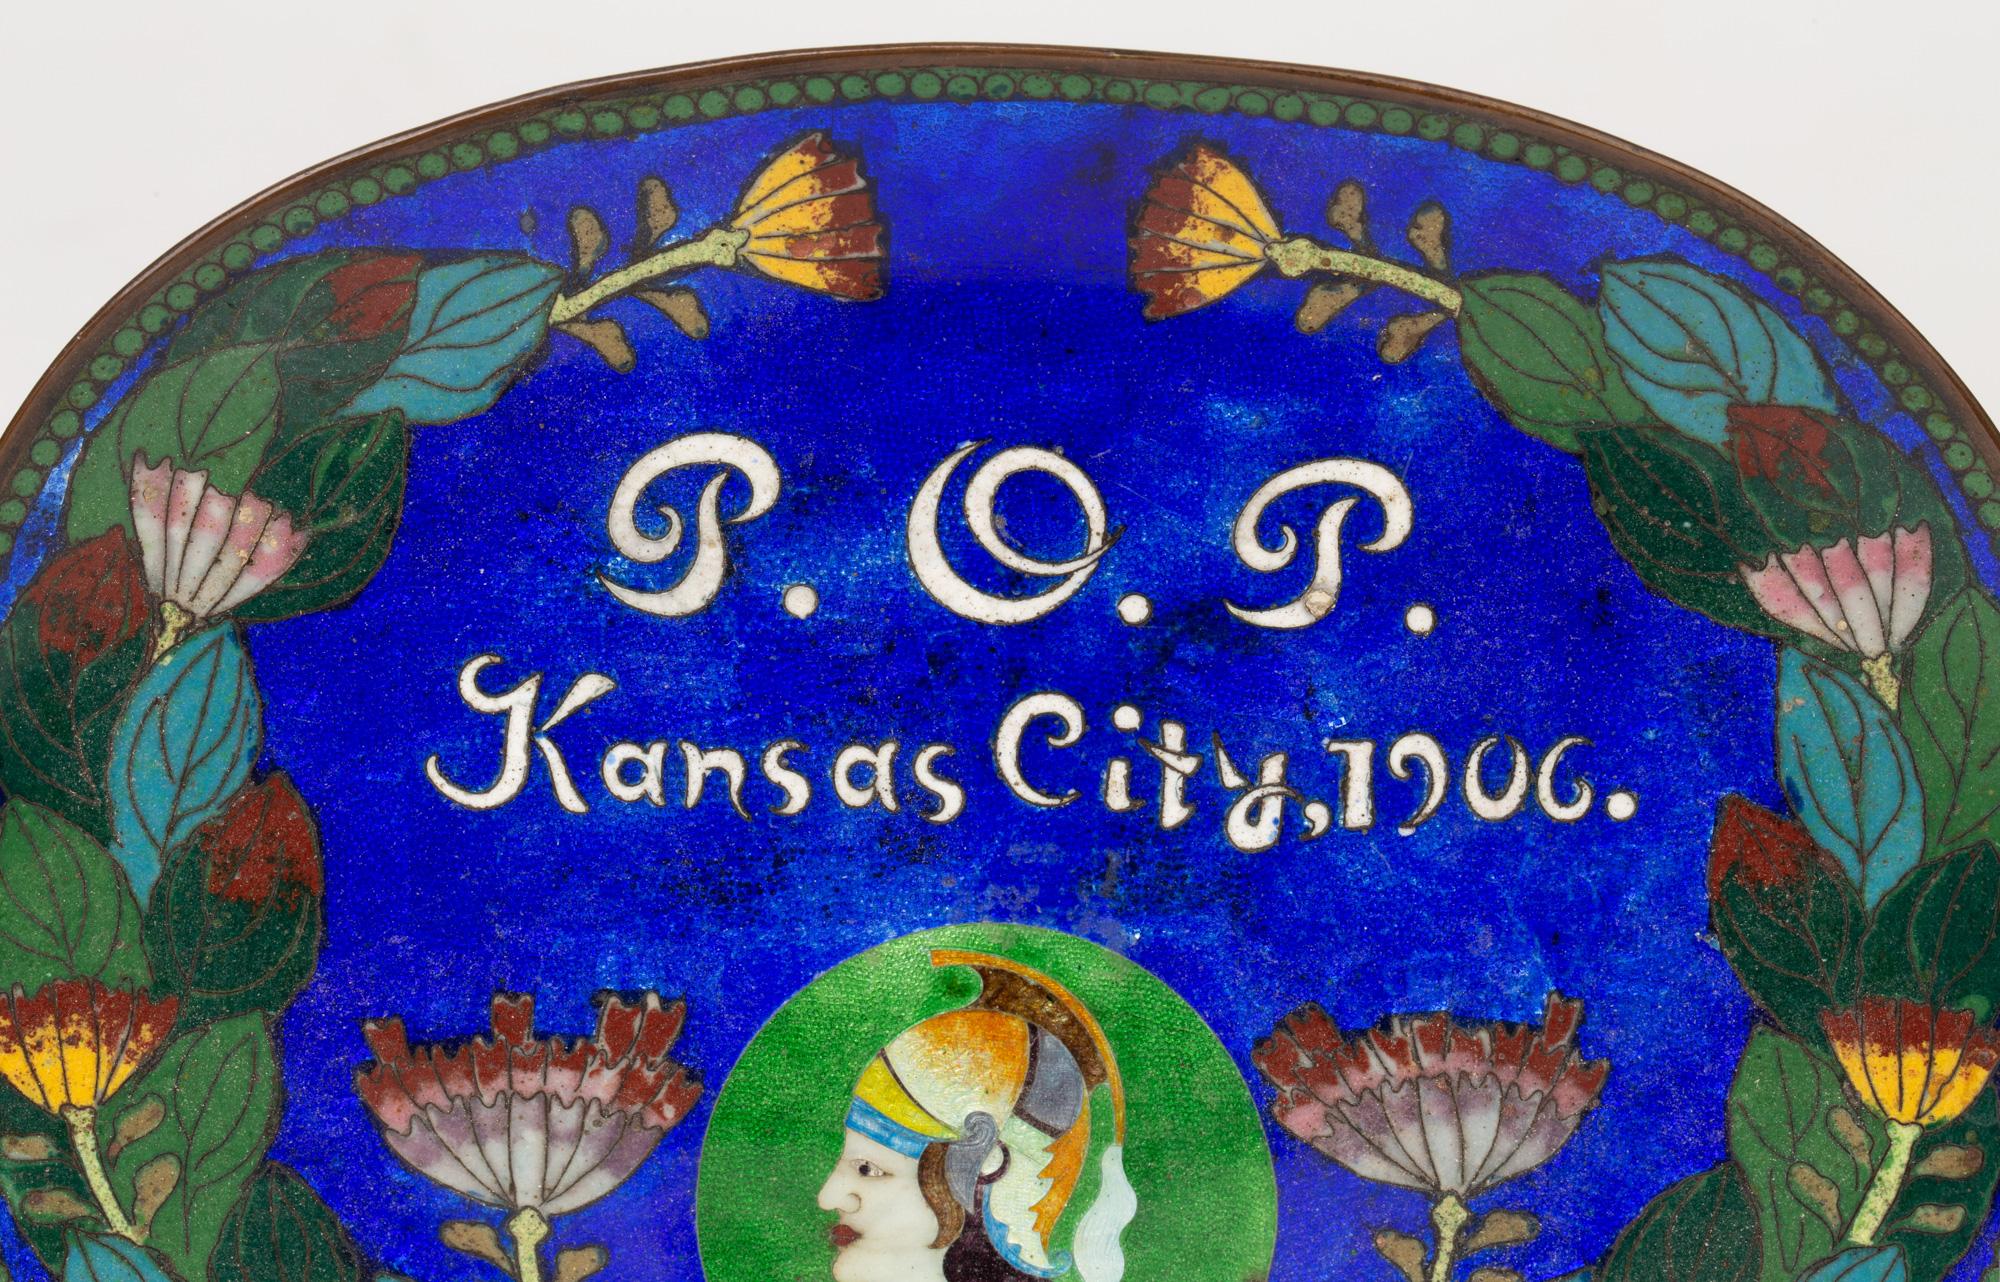 Ein ungewöhnliches und seltenes Cloisonné-Kartentablett mit chinesischer Zuschreibung, das für das Priests of Pallas Festival in Kansas City 1906 hergestellt wurde. Das Festival fand jährlich eine Woche lang zwischen 1887 und 1912 statt. Diese